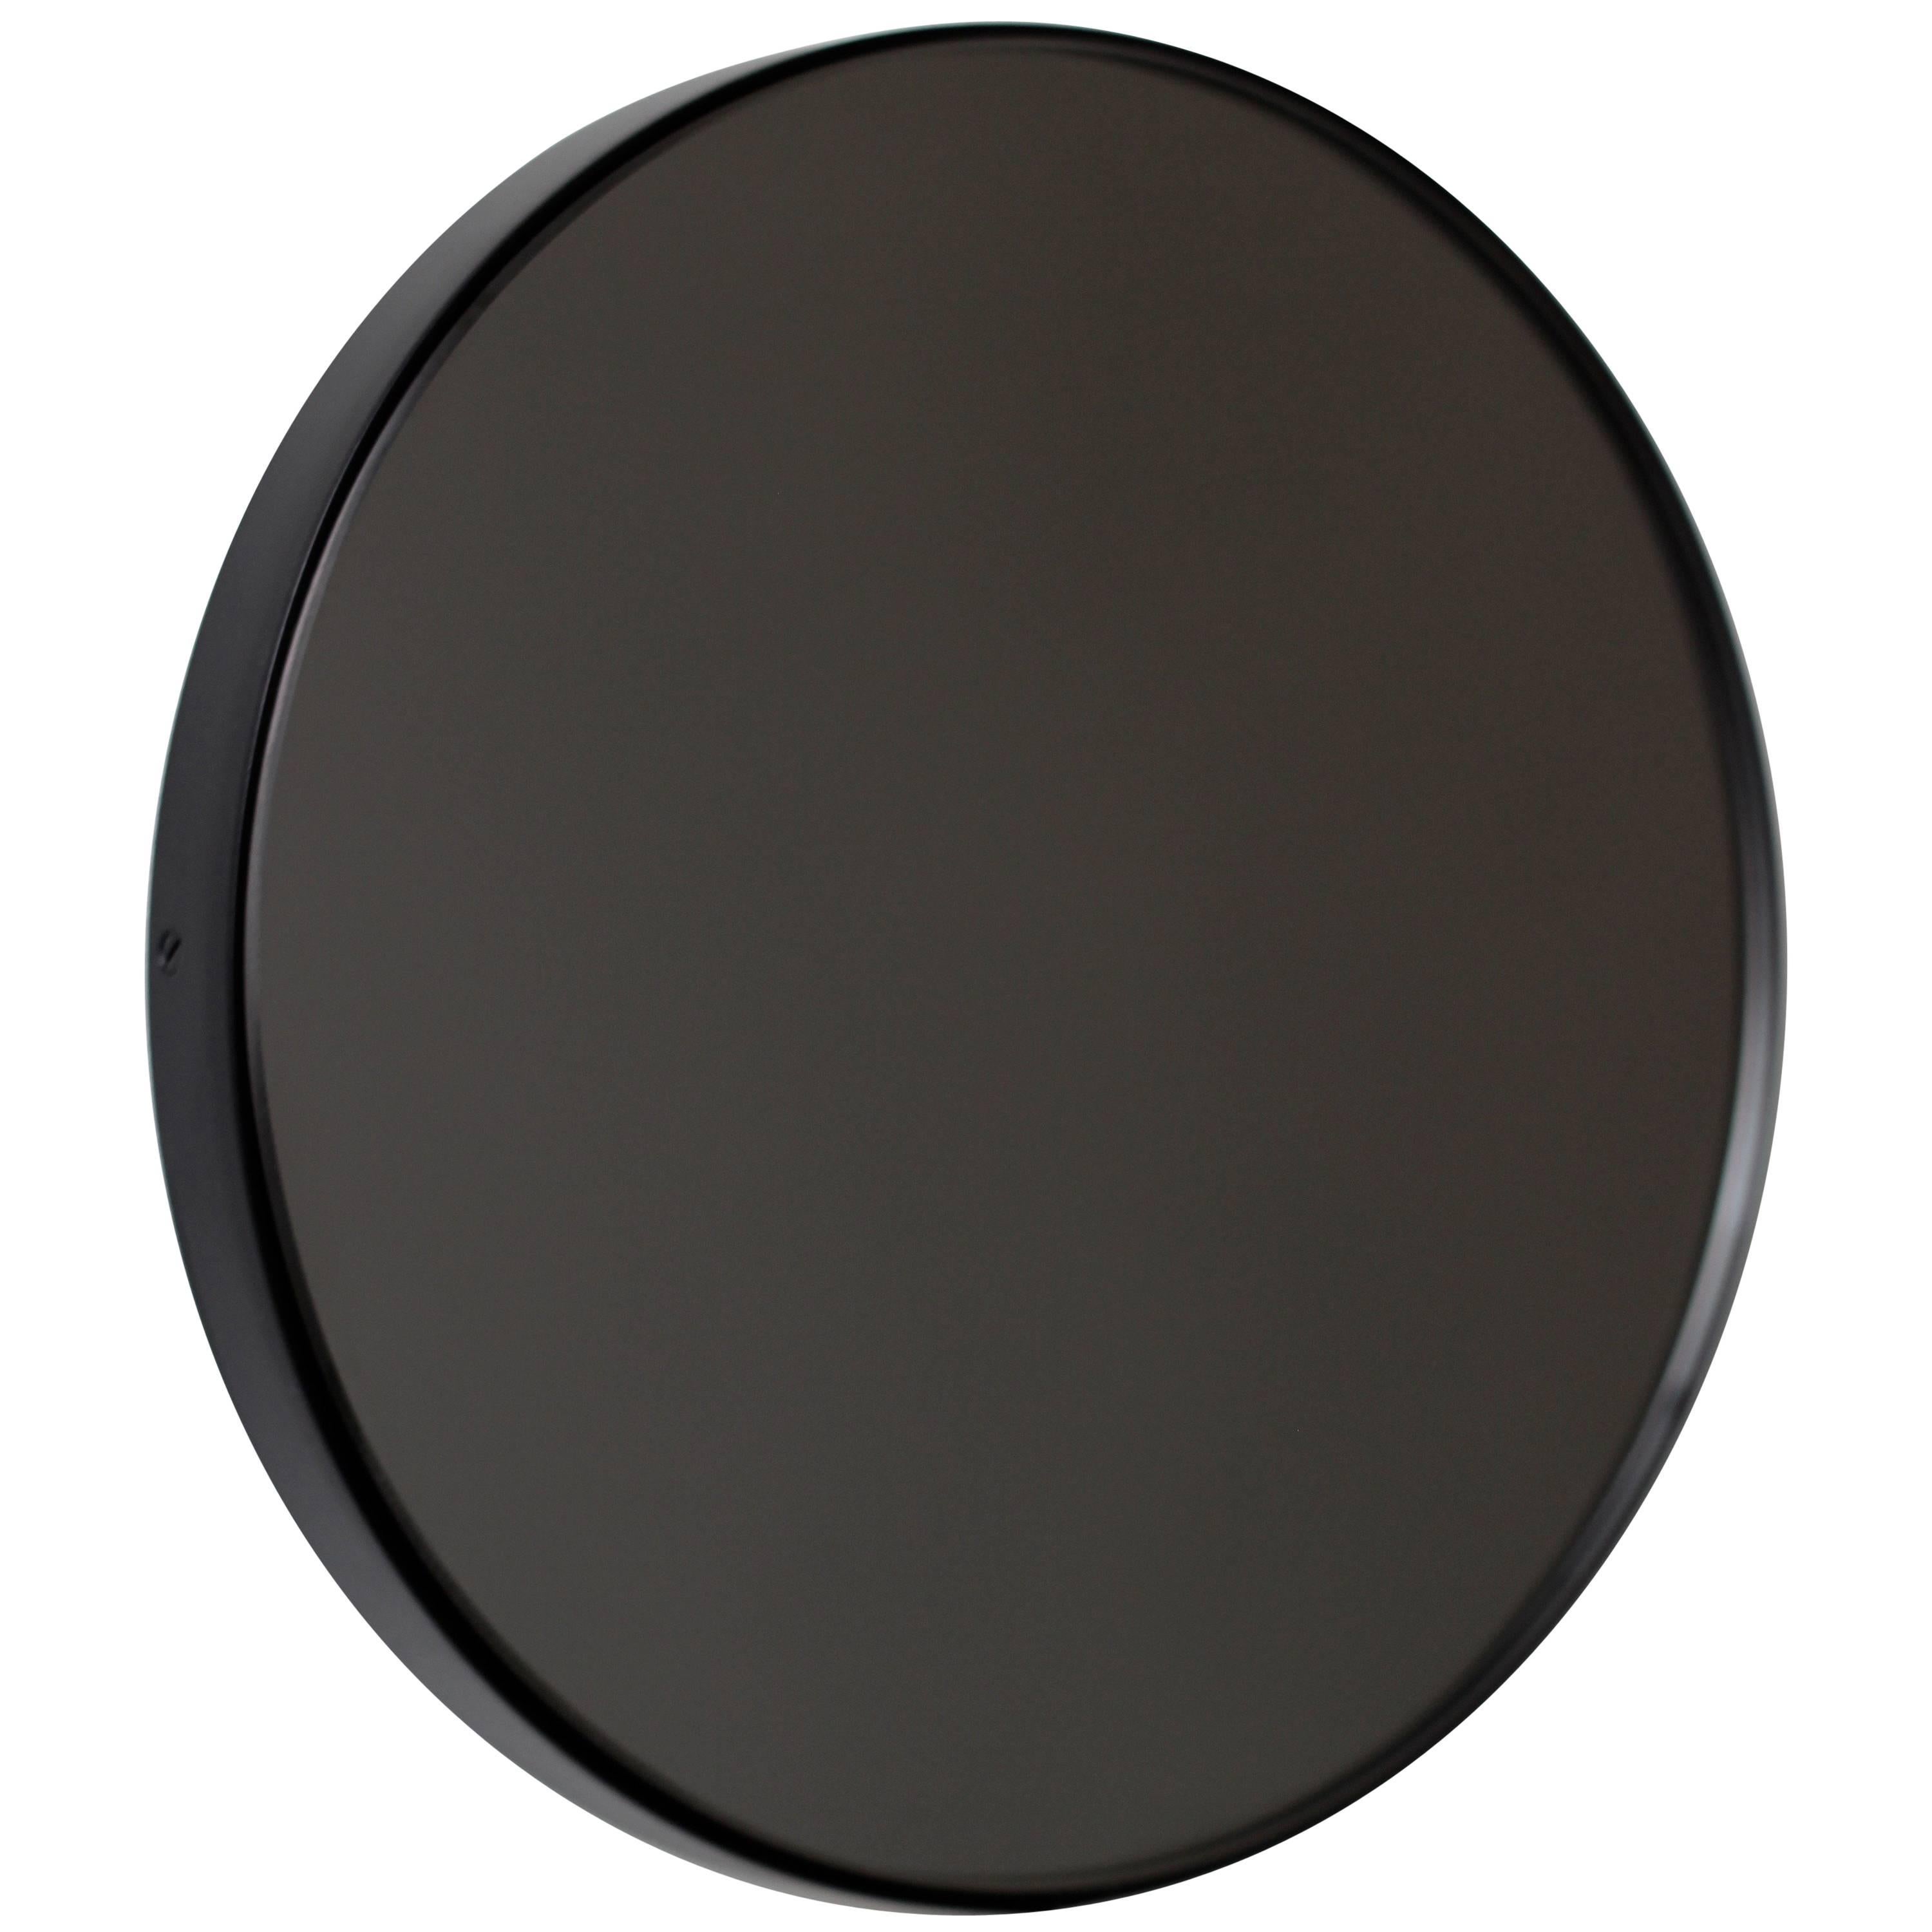 Orbis Black Tinted Modern Art Deco Round Mirror with Black Frame, XL